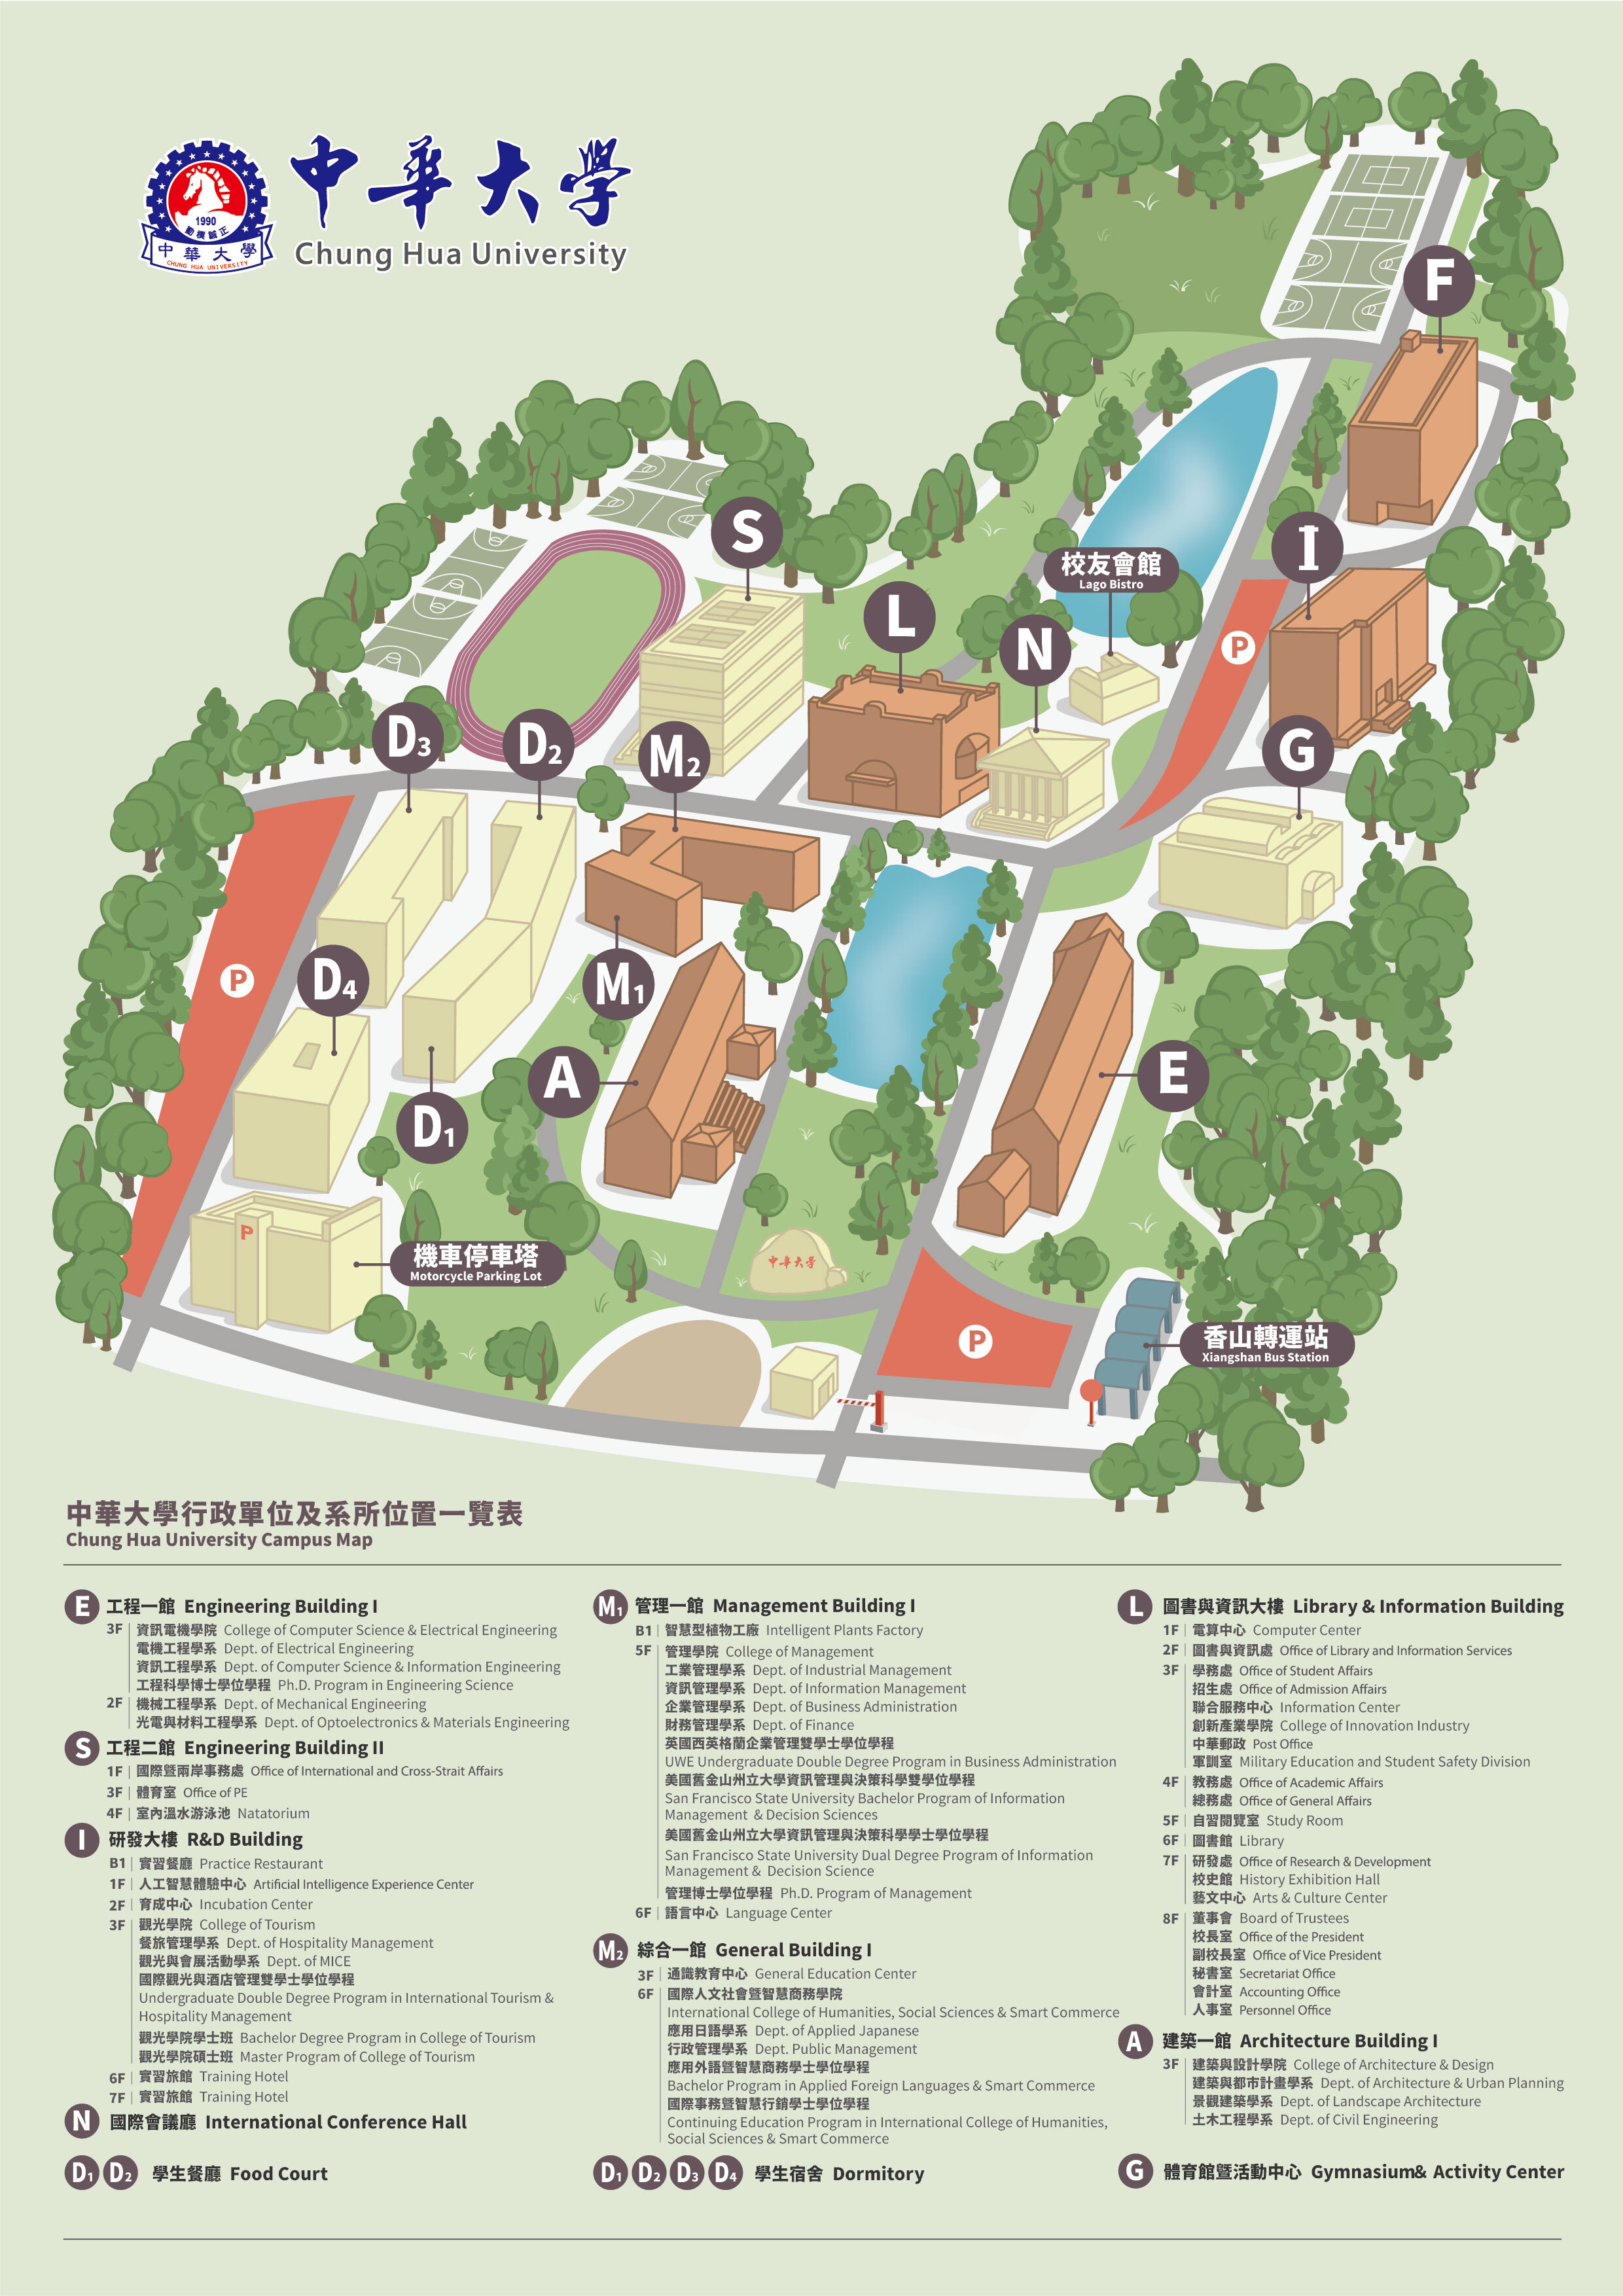  中華大學校園地圖